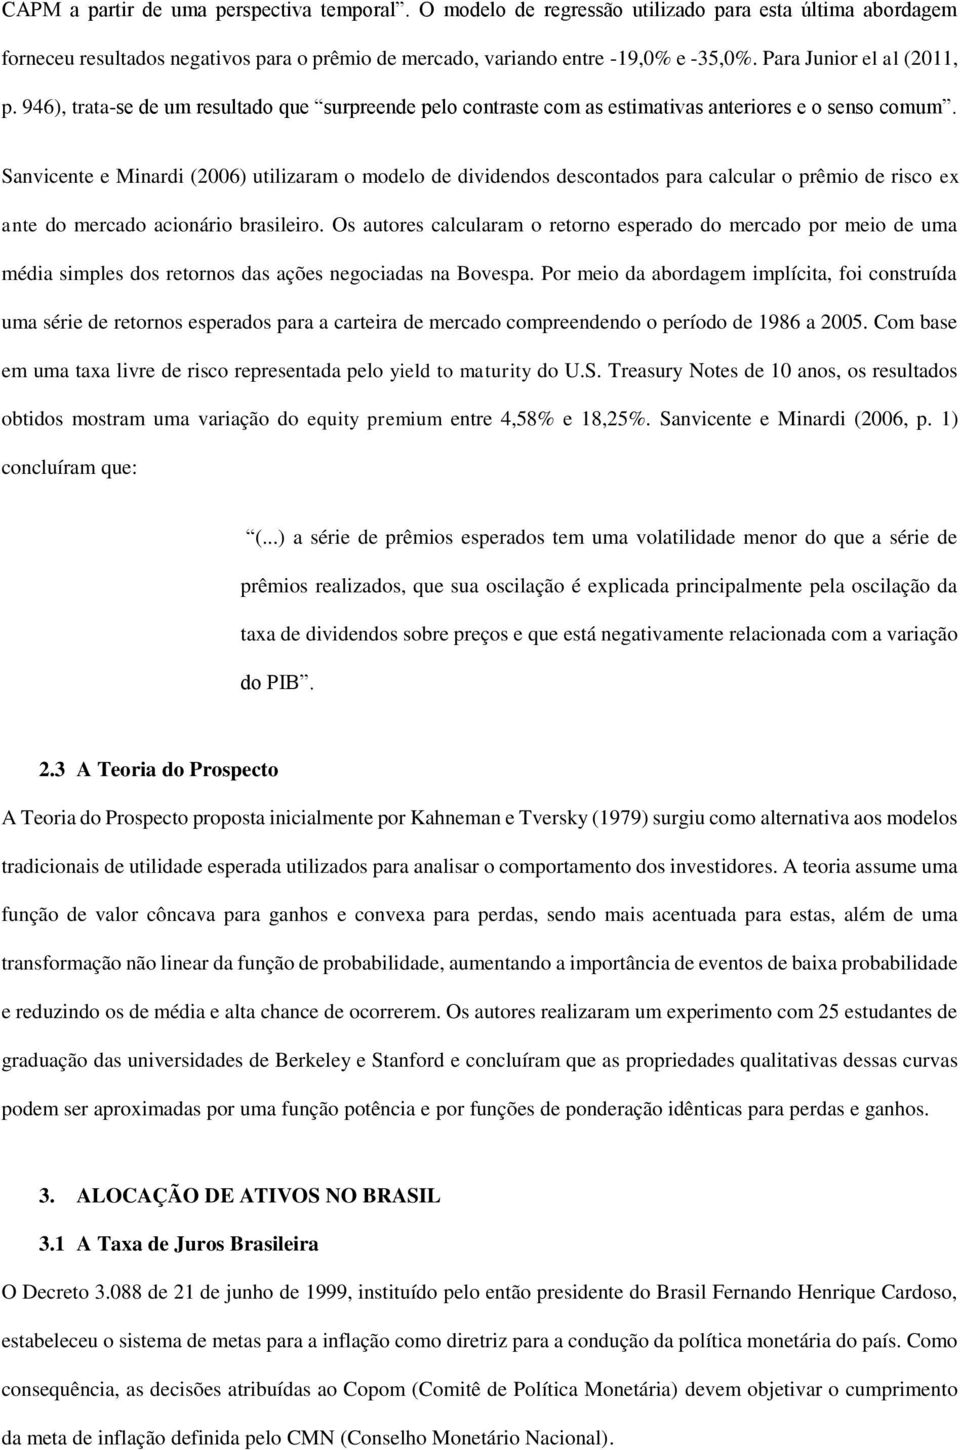 Sanvicente e Minardi (2006) utilizaram o modelo de dividendos descontados para calcular o prêmio de risco ex ante do mercado acionário brasileiro.